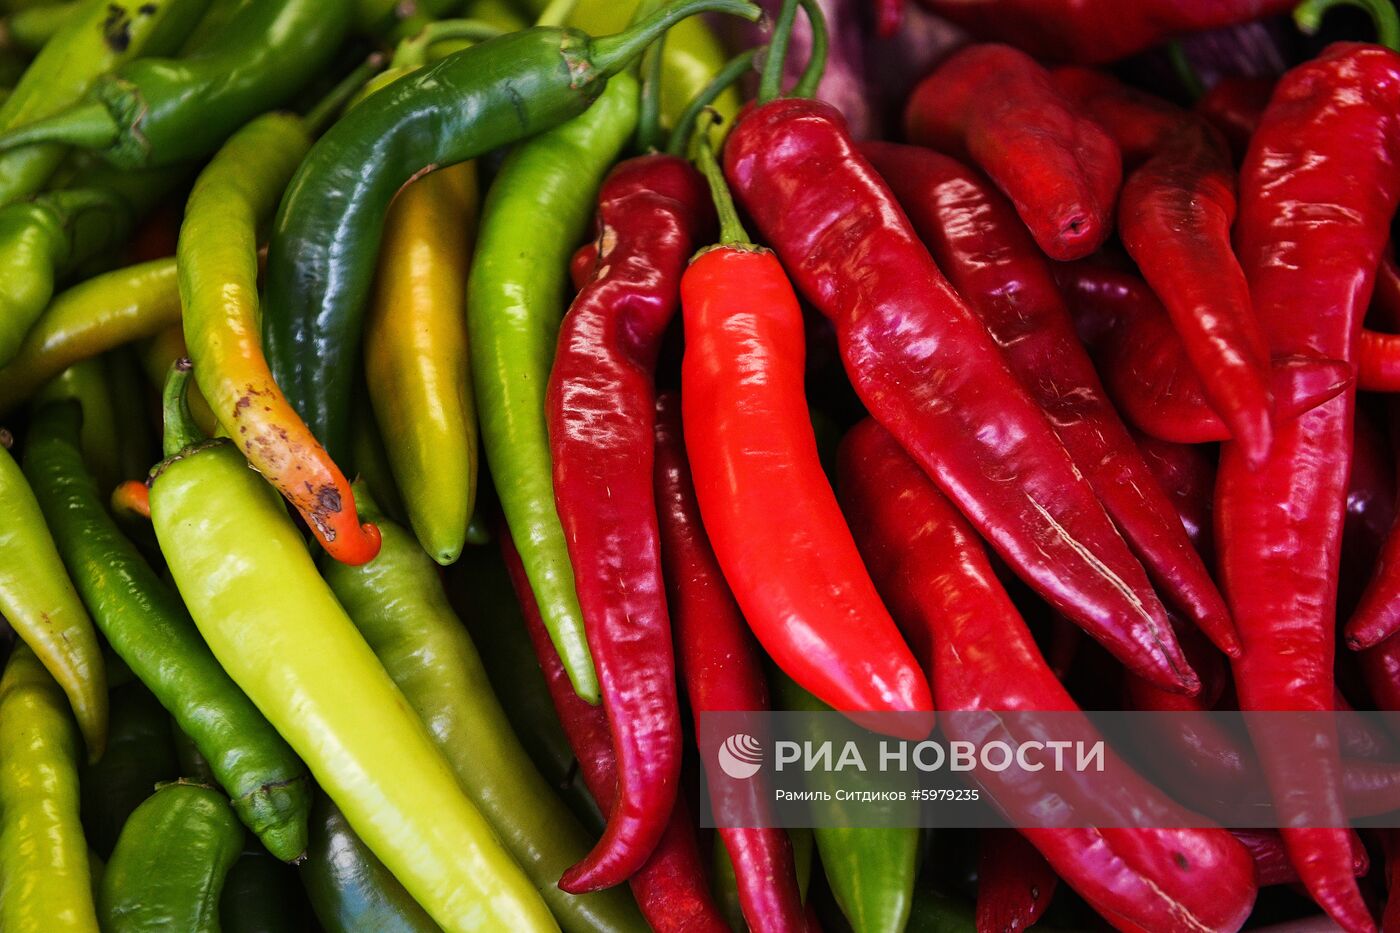 Продажа овощей и фруктов в Москве